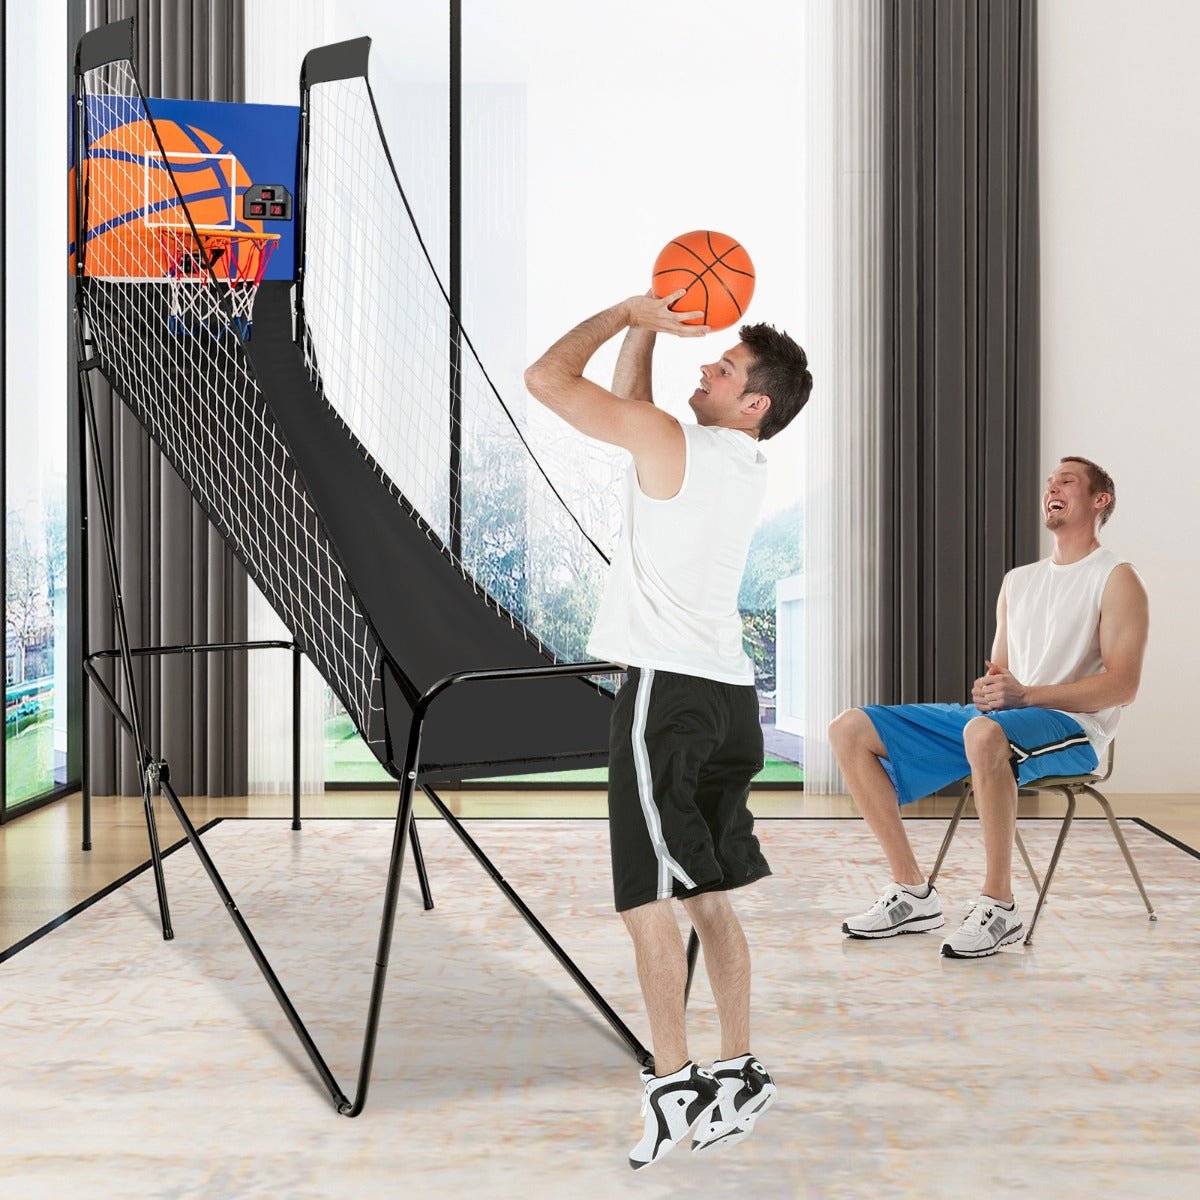 Portable Arcade Basketball Game: Electronic Scorer for Indoor Fun